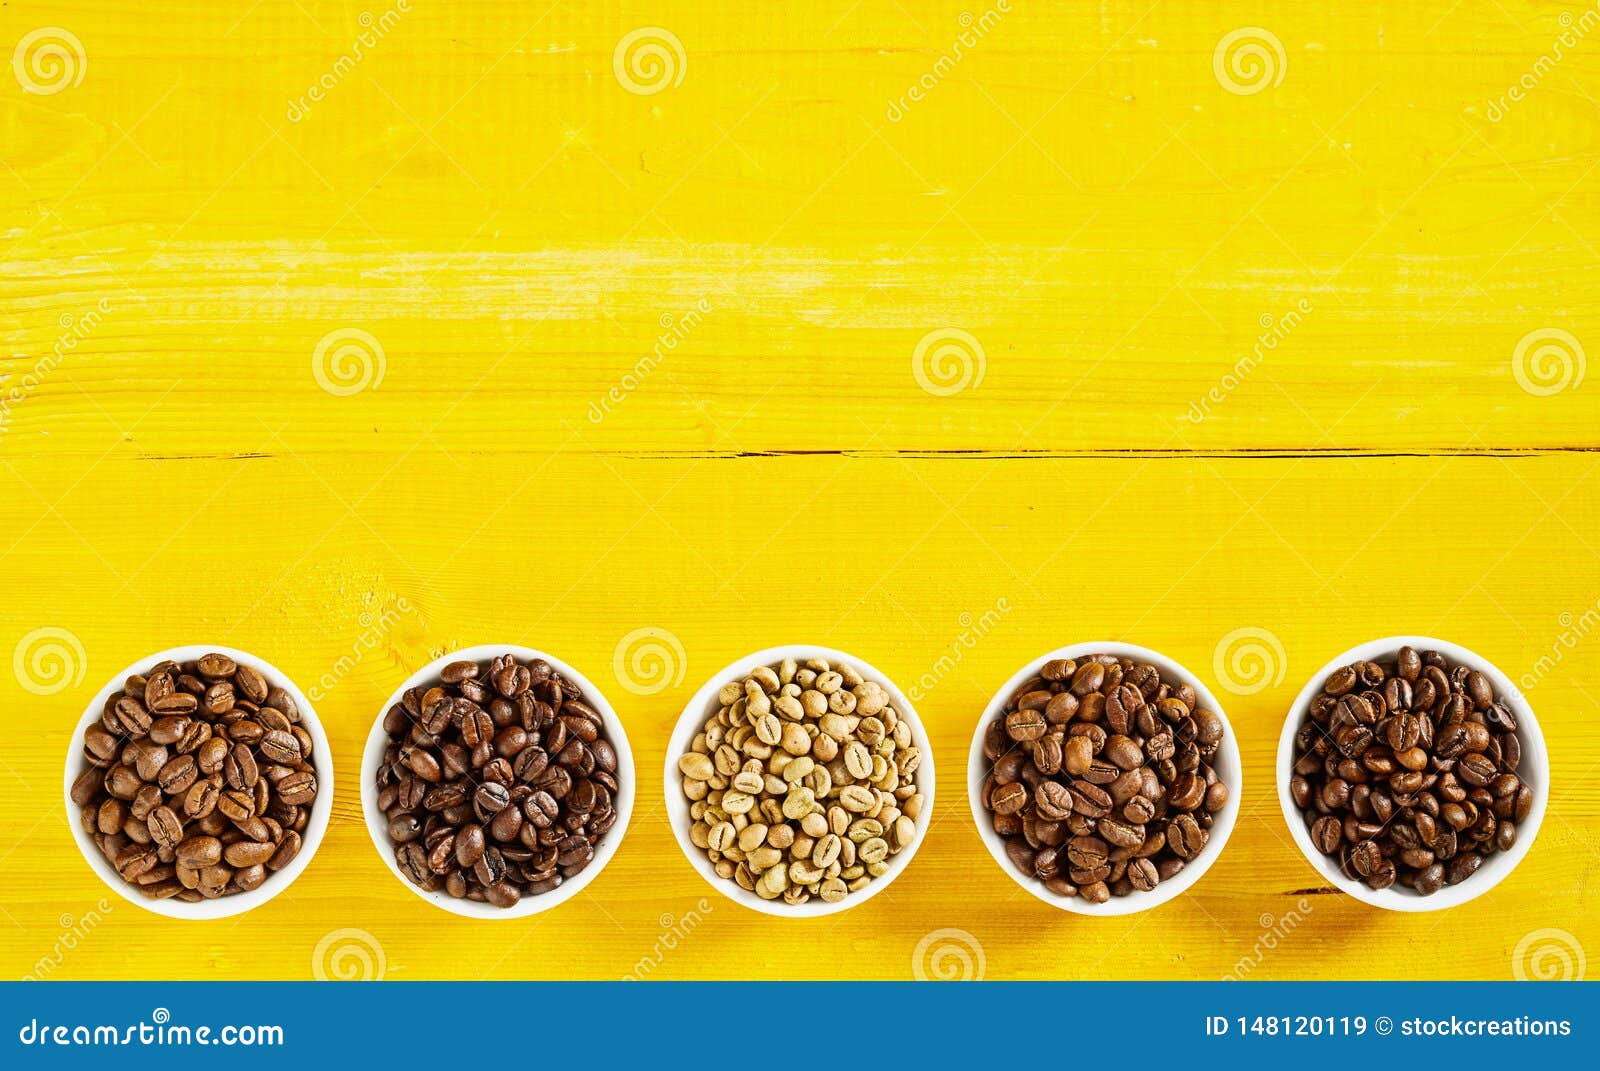 Grens van een geassorteerde verscheidenheid van koffiebonen